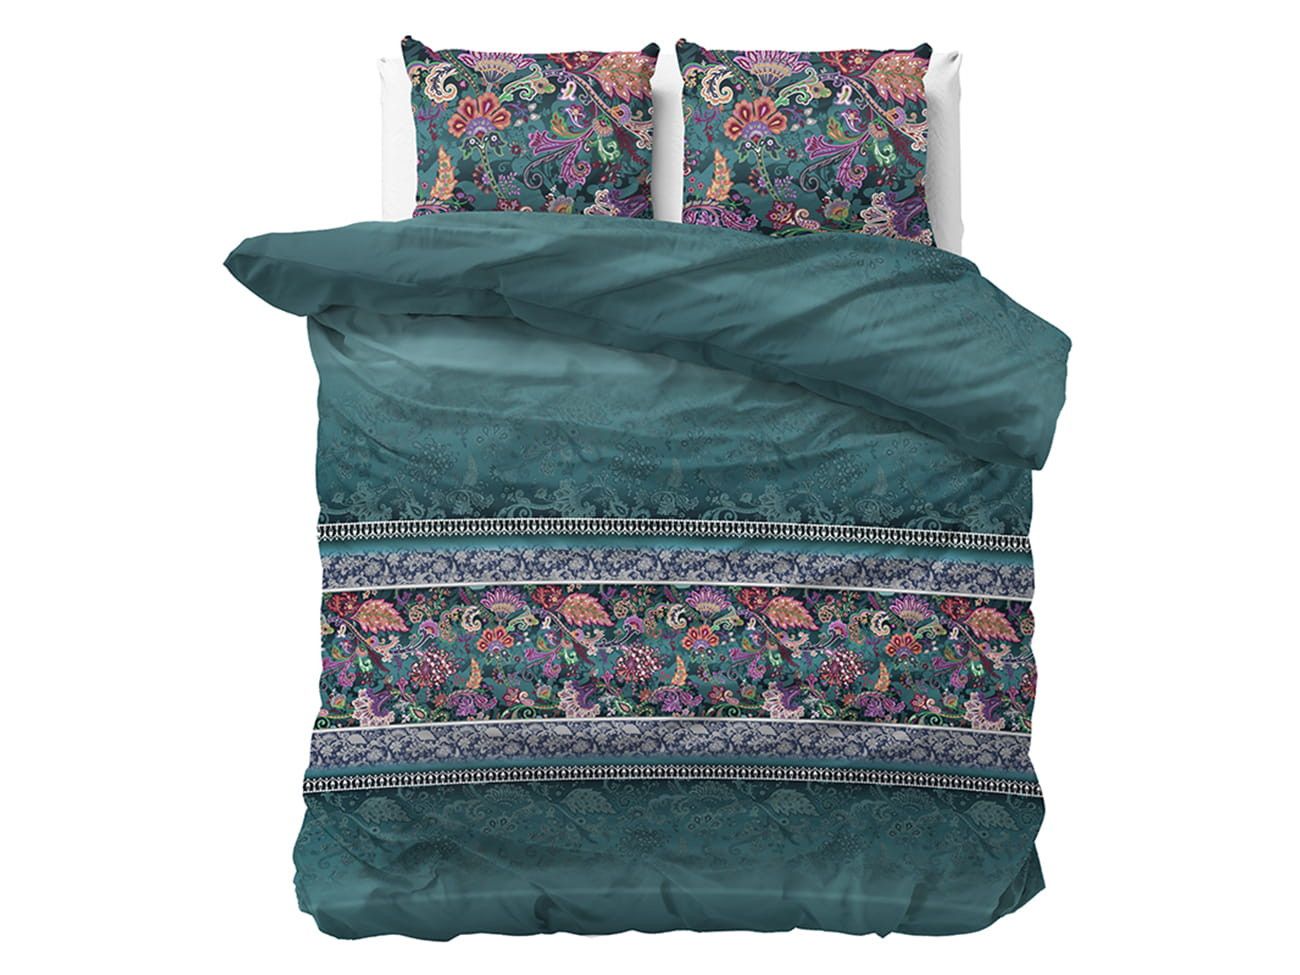 DomTextilu Luxusné smaragdovo zelené posteľné obliečky s motívom kvetov 220 x 240 cm -   Šírka: 220 cm | Dĺžka: 240 cm 49088-223186